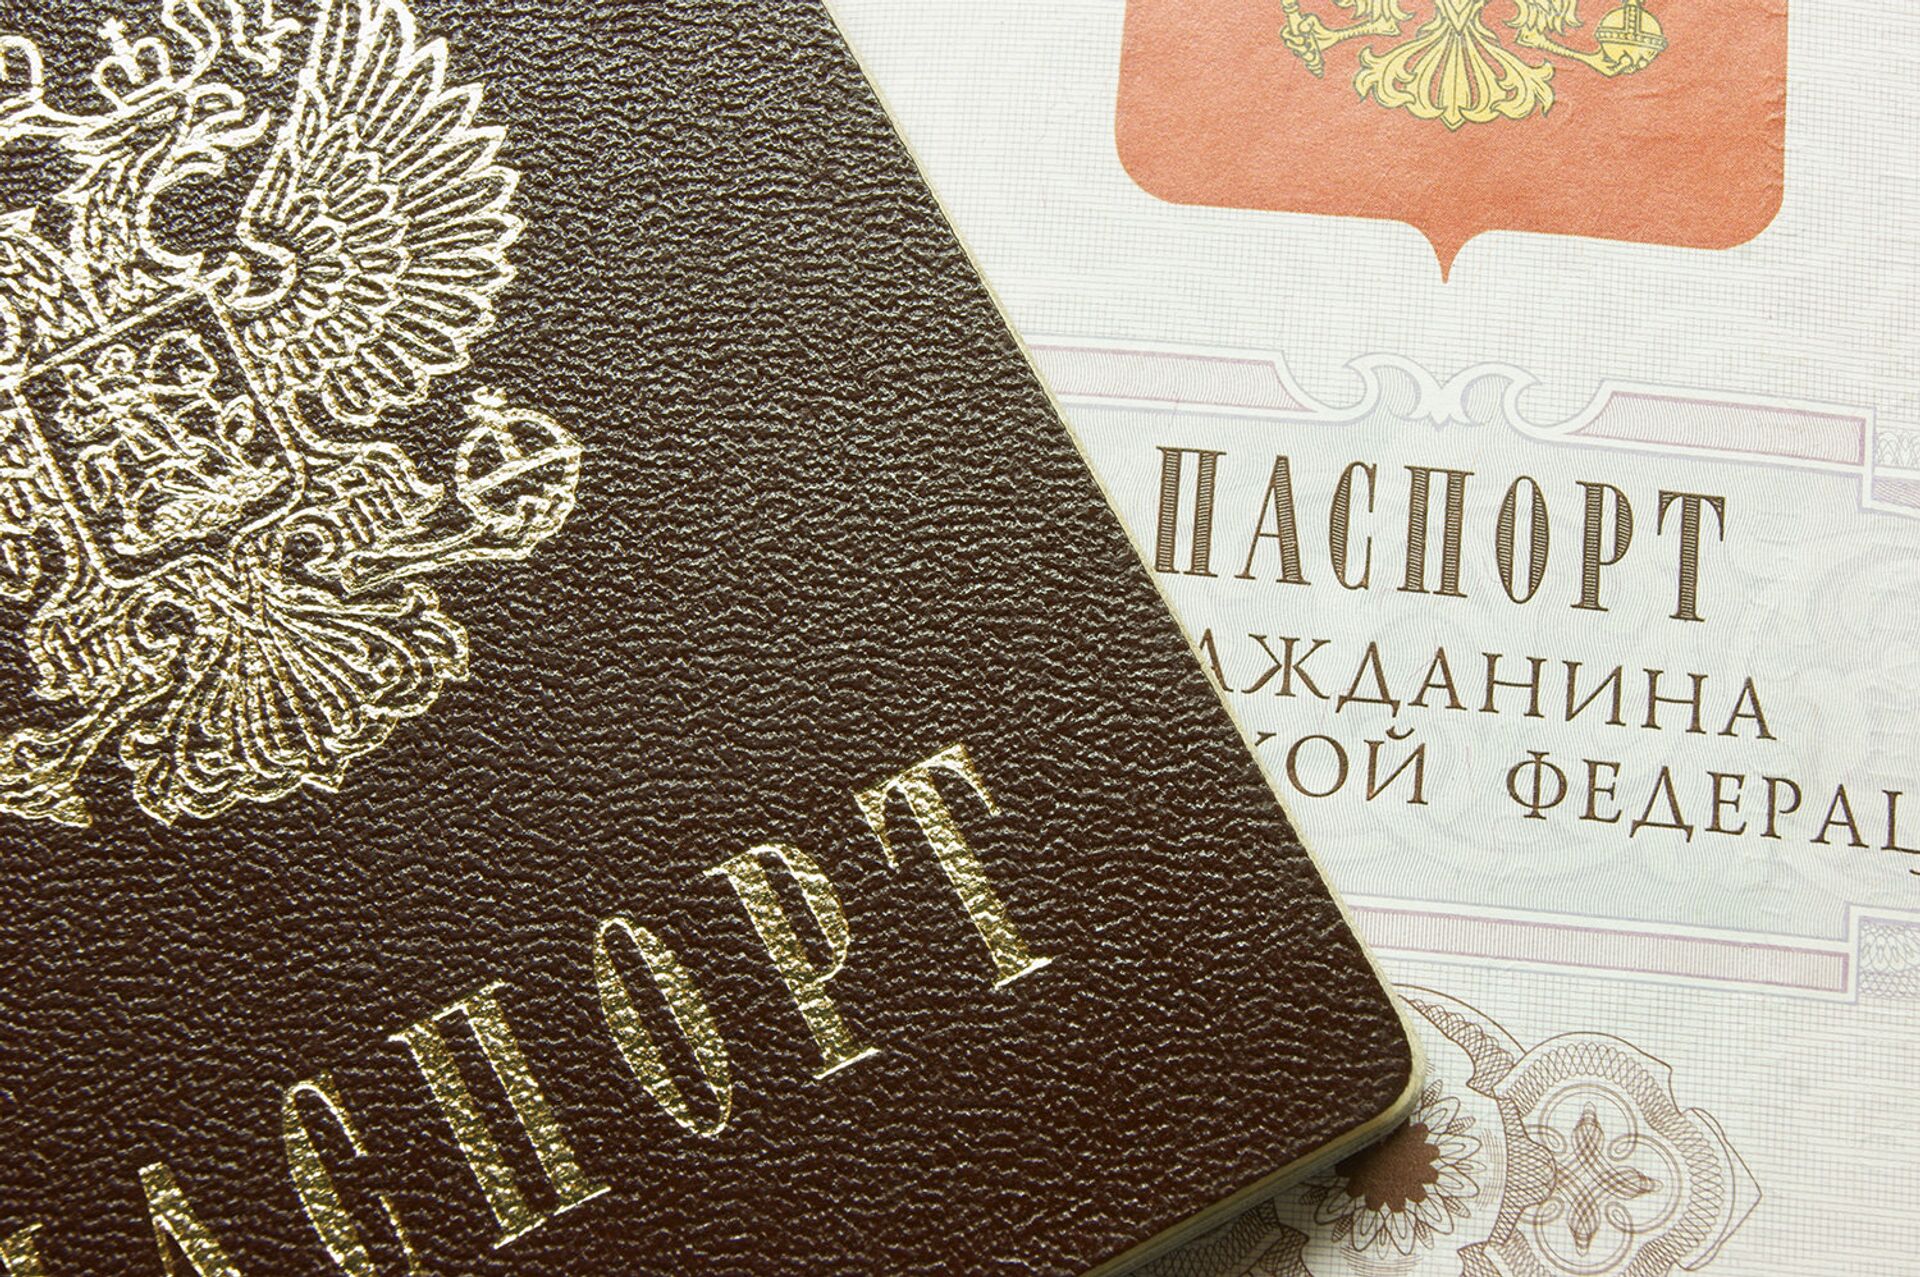 %Паспорт - ПРАЙМ, 1920, 29.12.2020